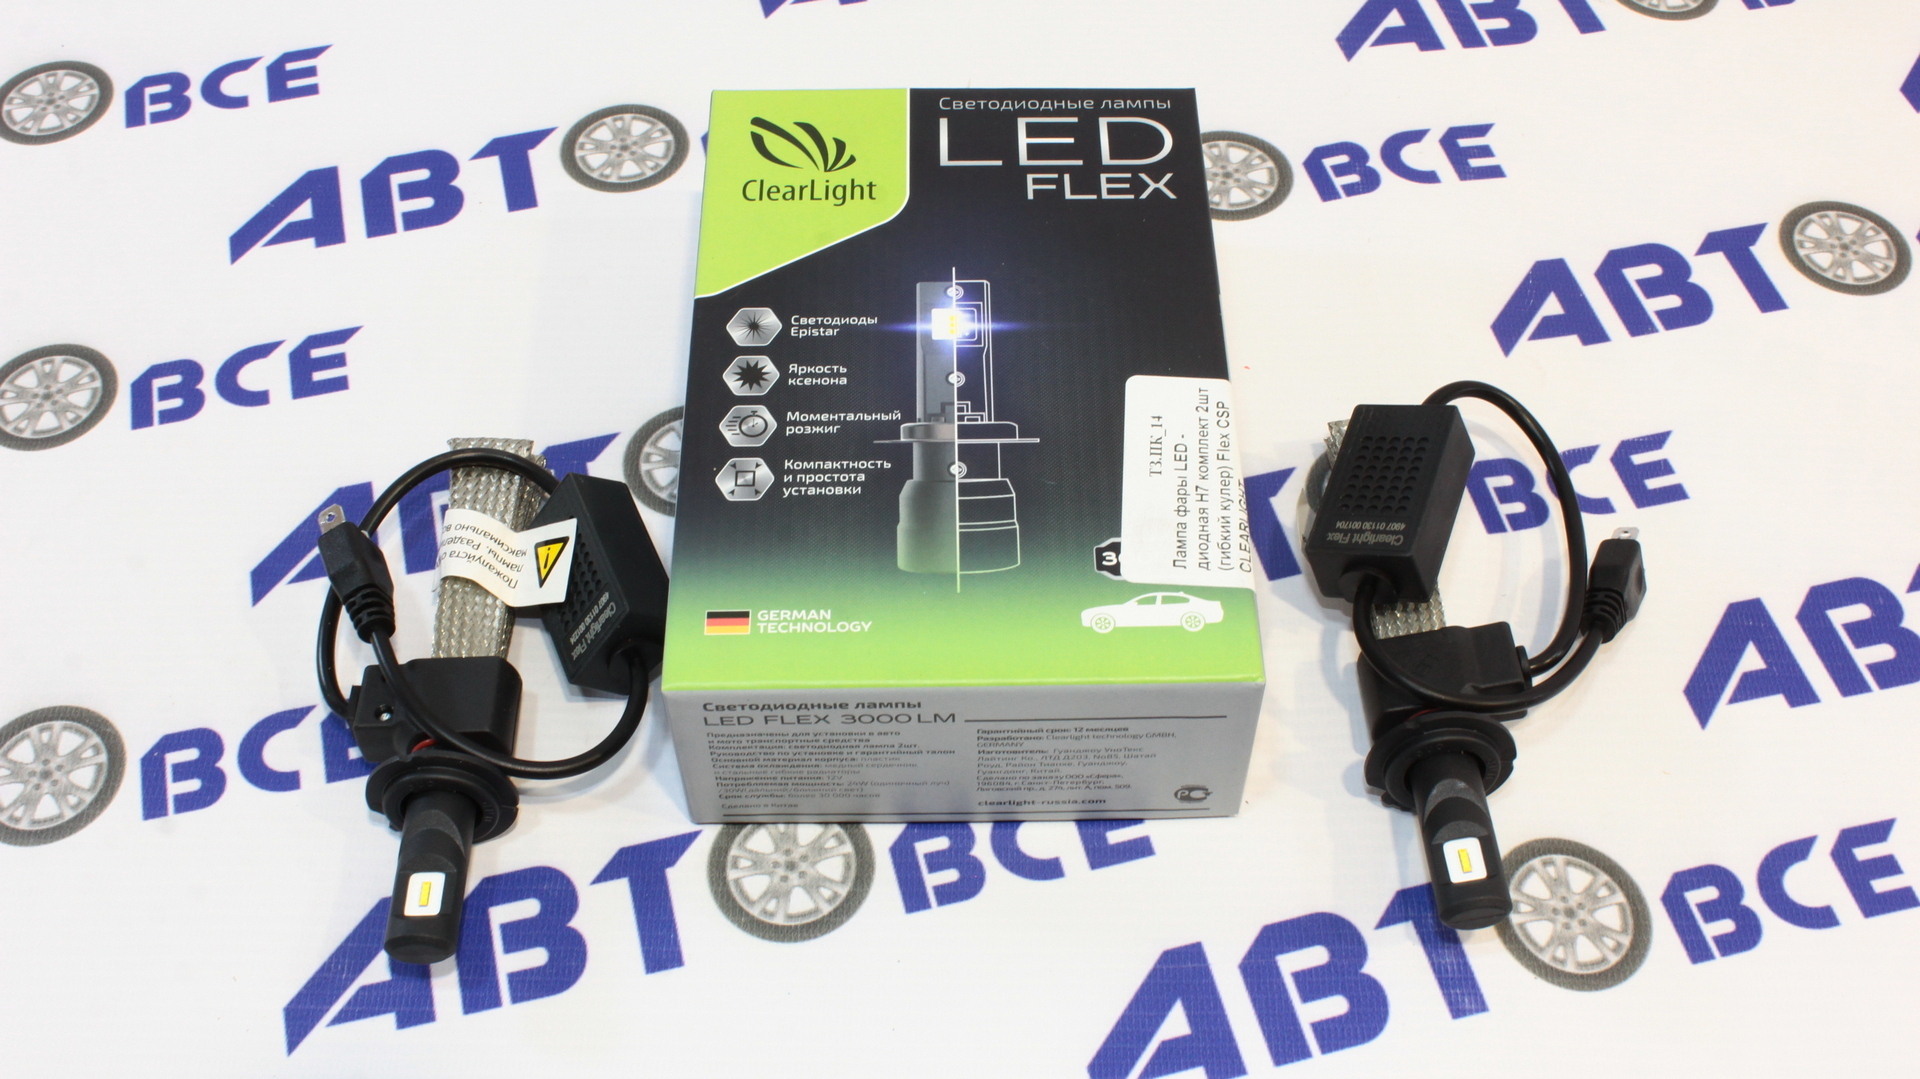 Лампа фары LED - диодная H7 комплект 2шт (гибкий кулер) Ultion CLEARLIGHT